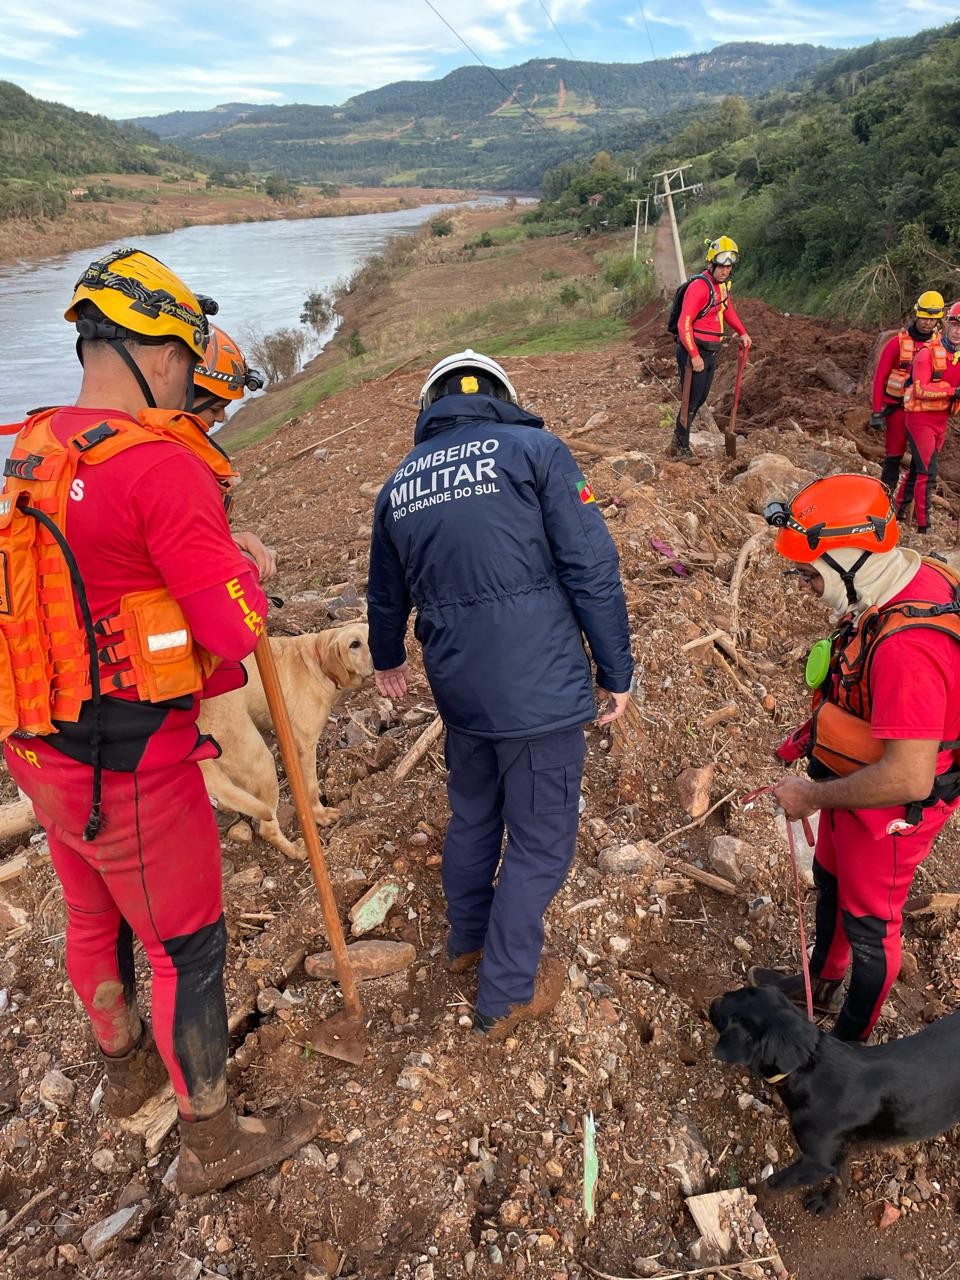 Bombeiros de MT fazem operação para resgatar seis pessoas da mesma família soterradas após enchentes no RS